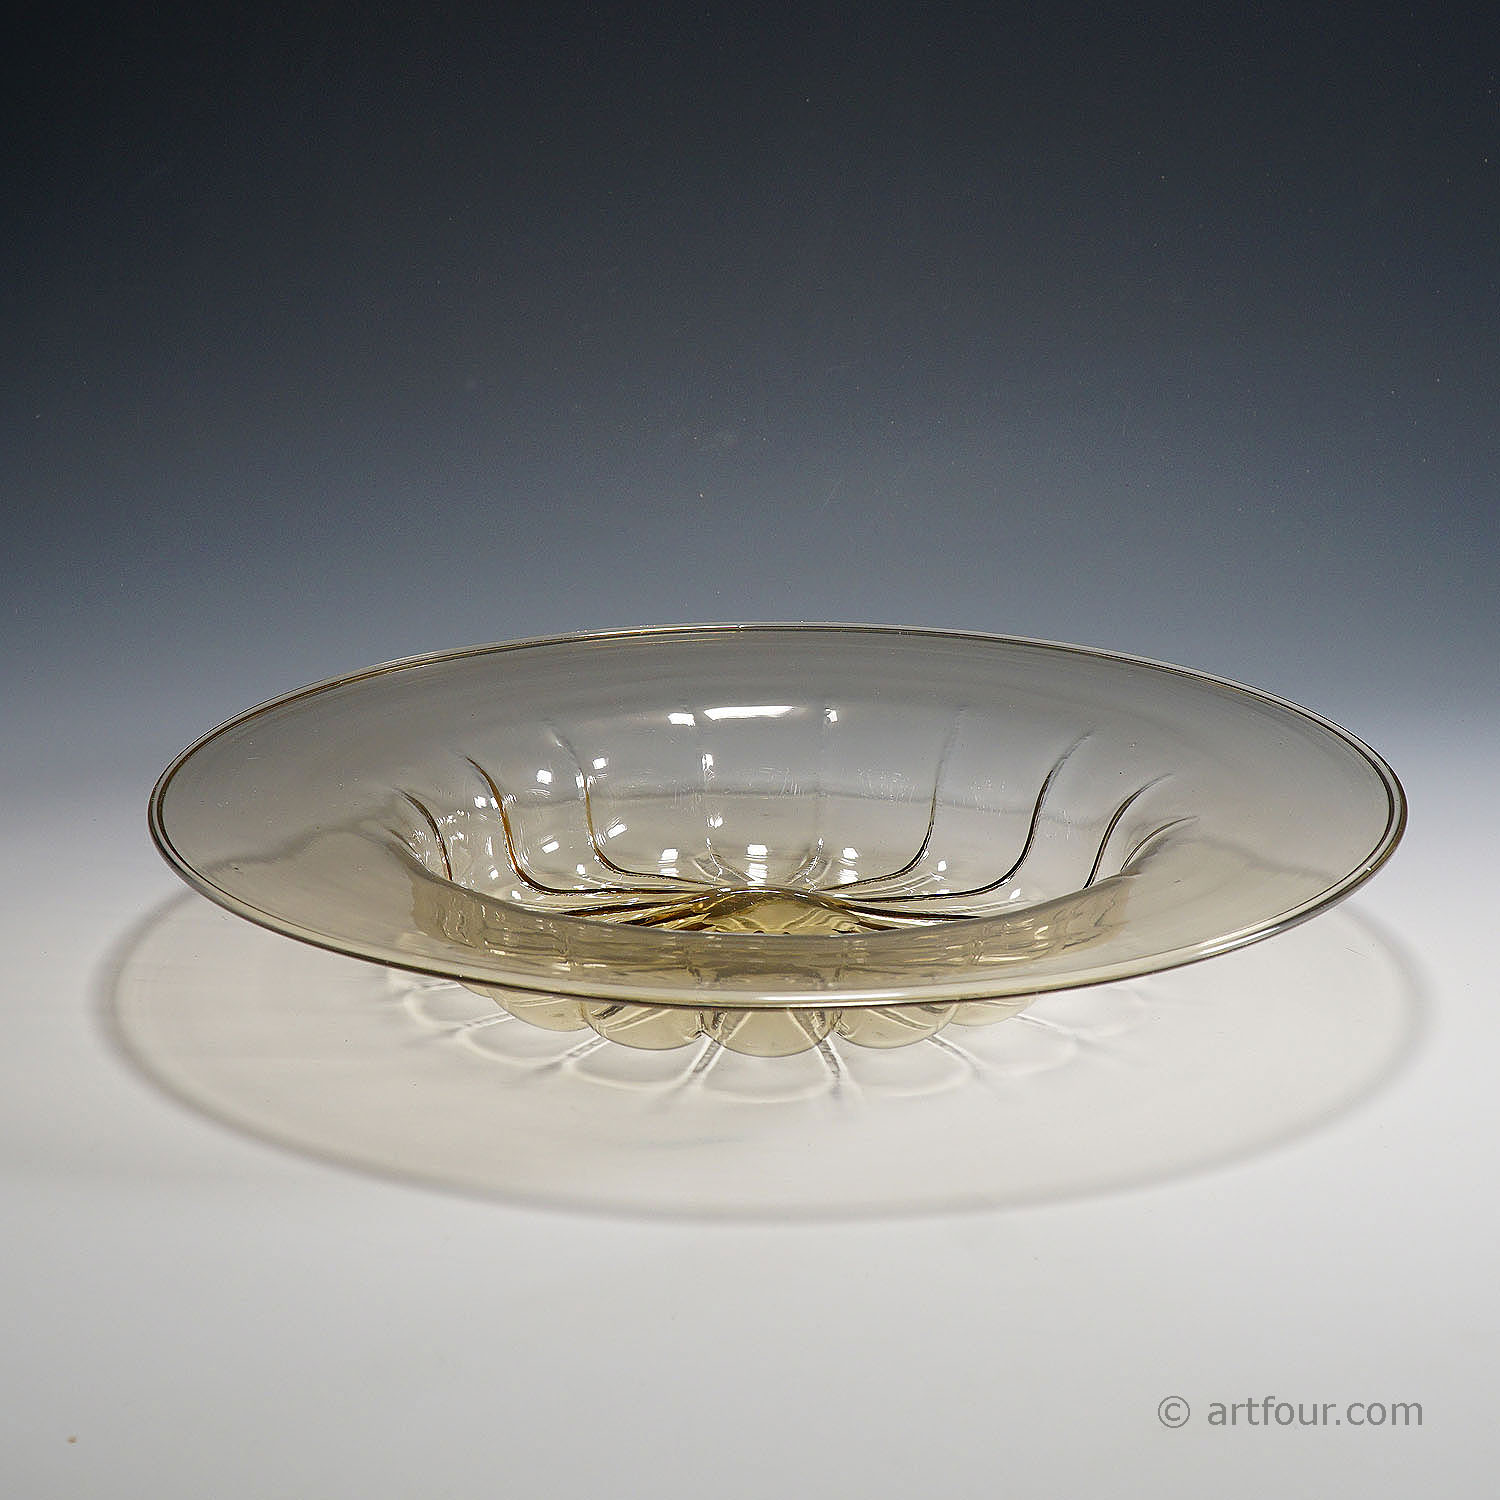 Vetro Soffiato Glass Plate by Vittorio Zecchin for Venini Murano ca. 1925